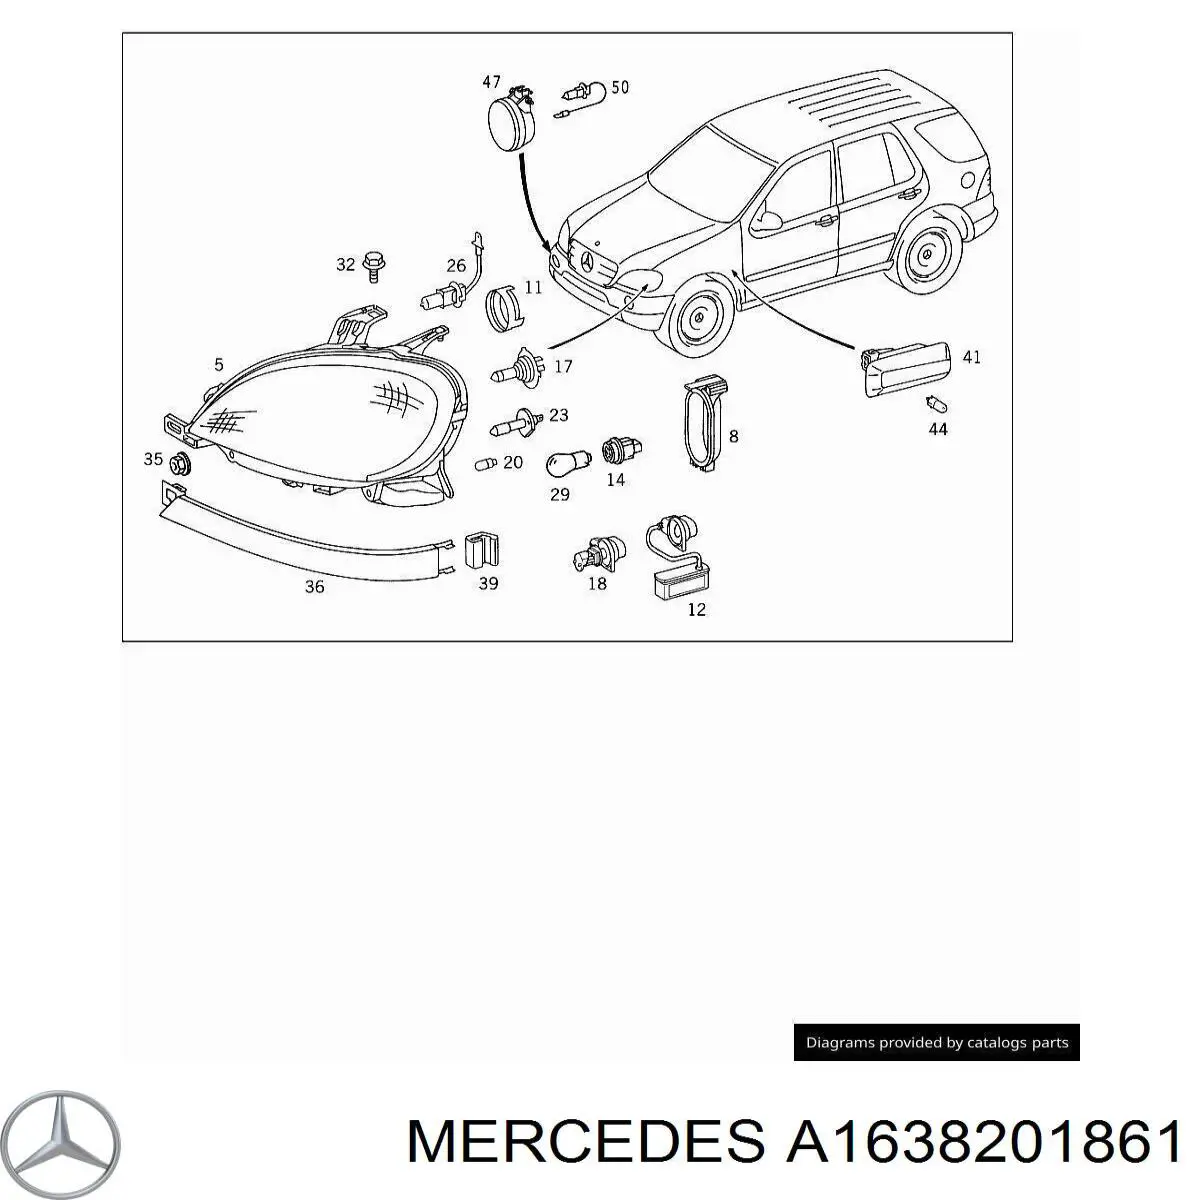 1638201861 Mercedes faro derecho